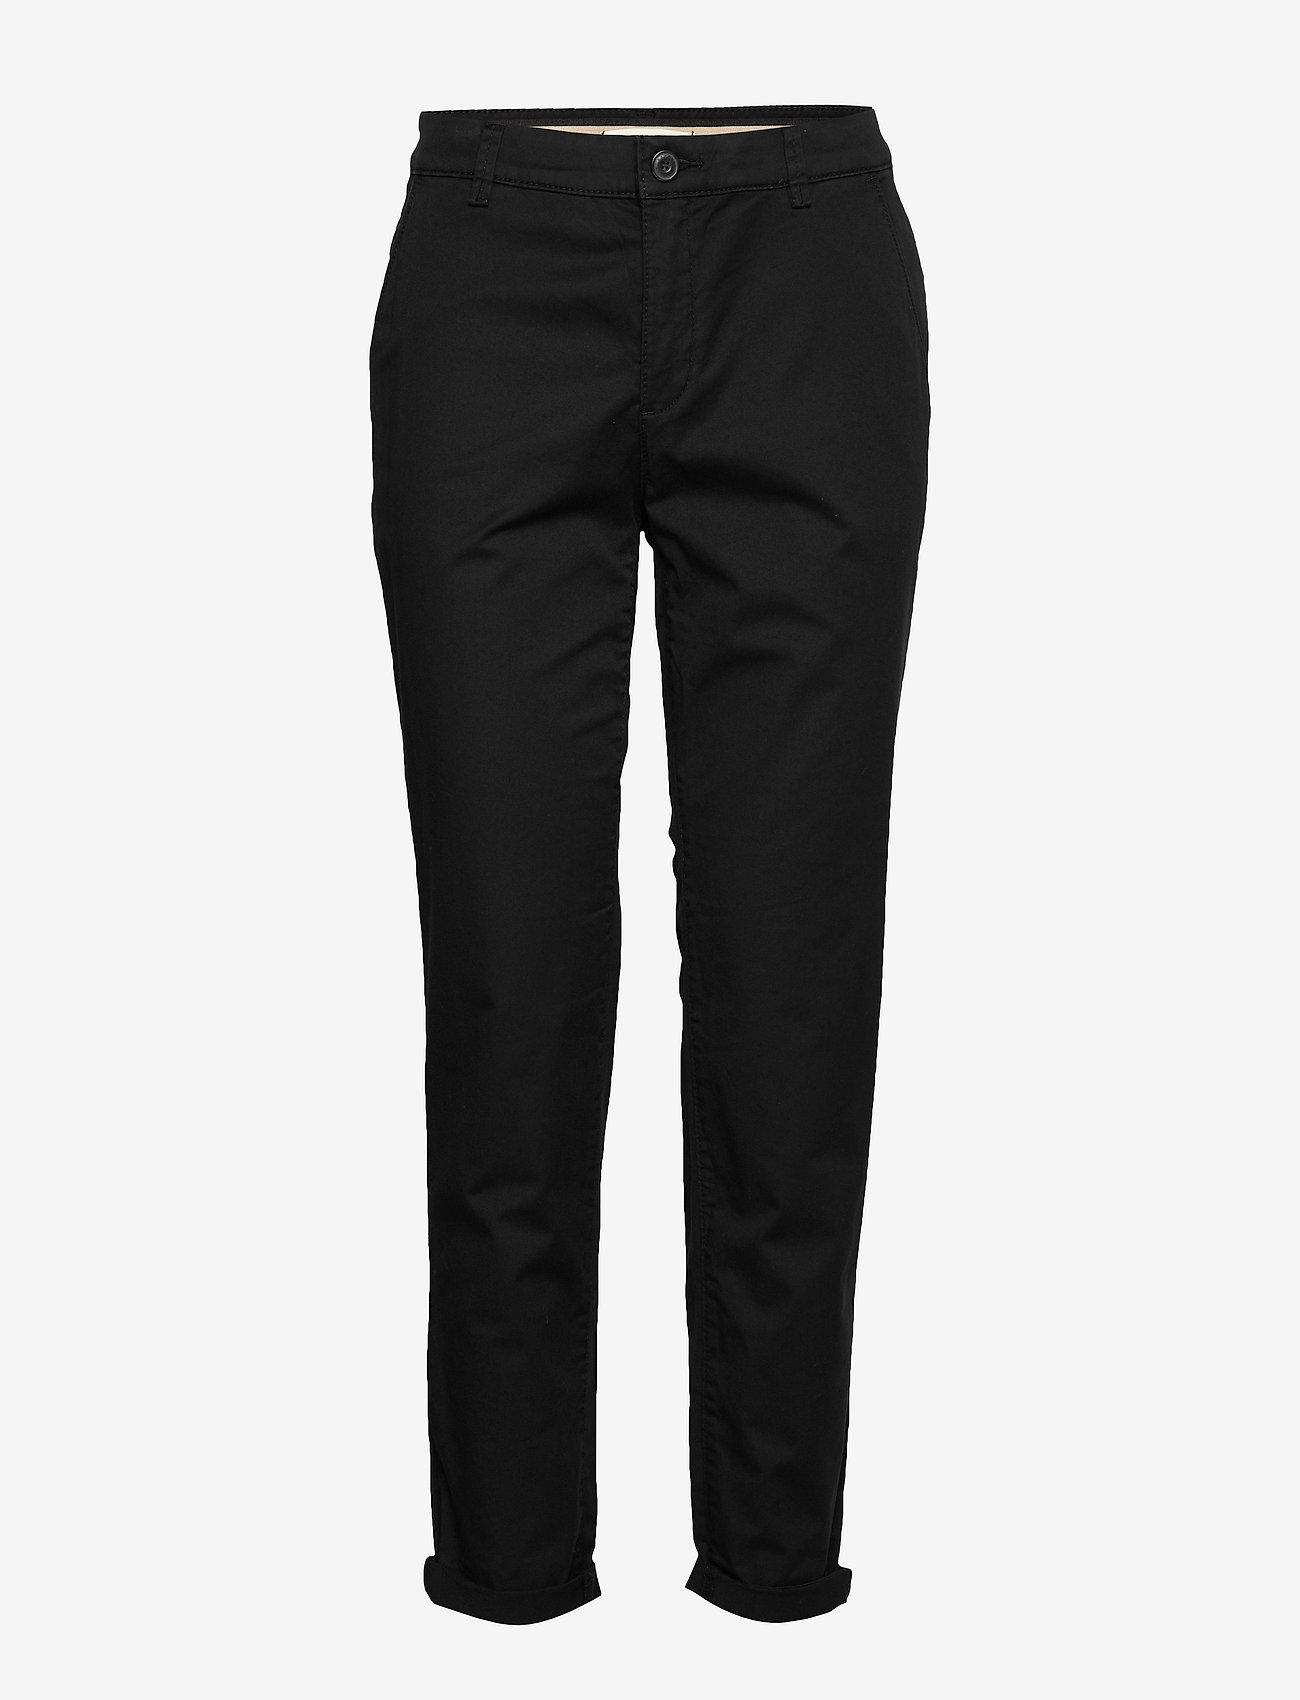 Esprit Casual Pants Woven Black 35999 Kr